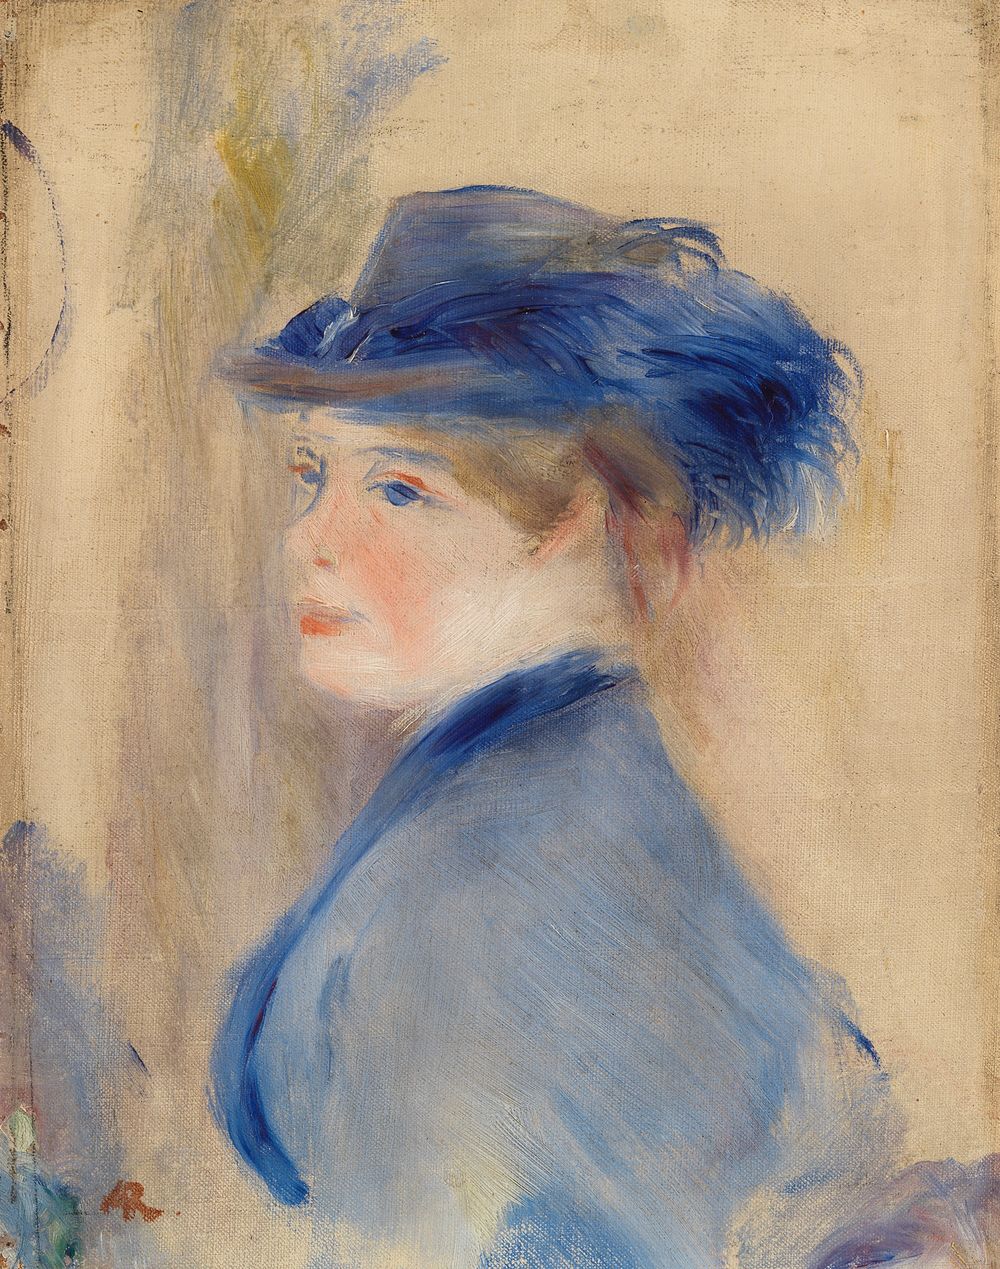 Bust of a Woman (Buste de femme) by Pierre Auguste Renoir